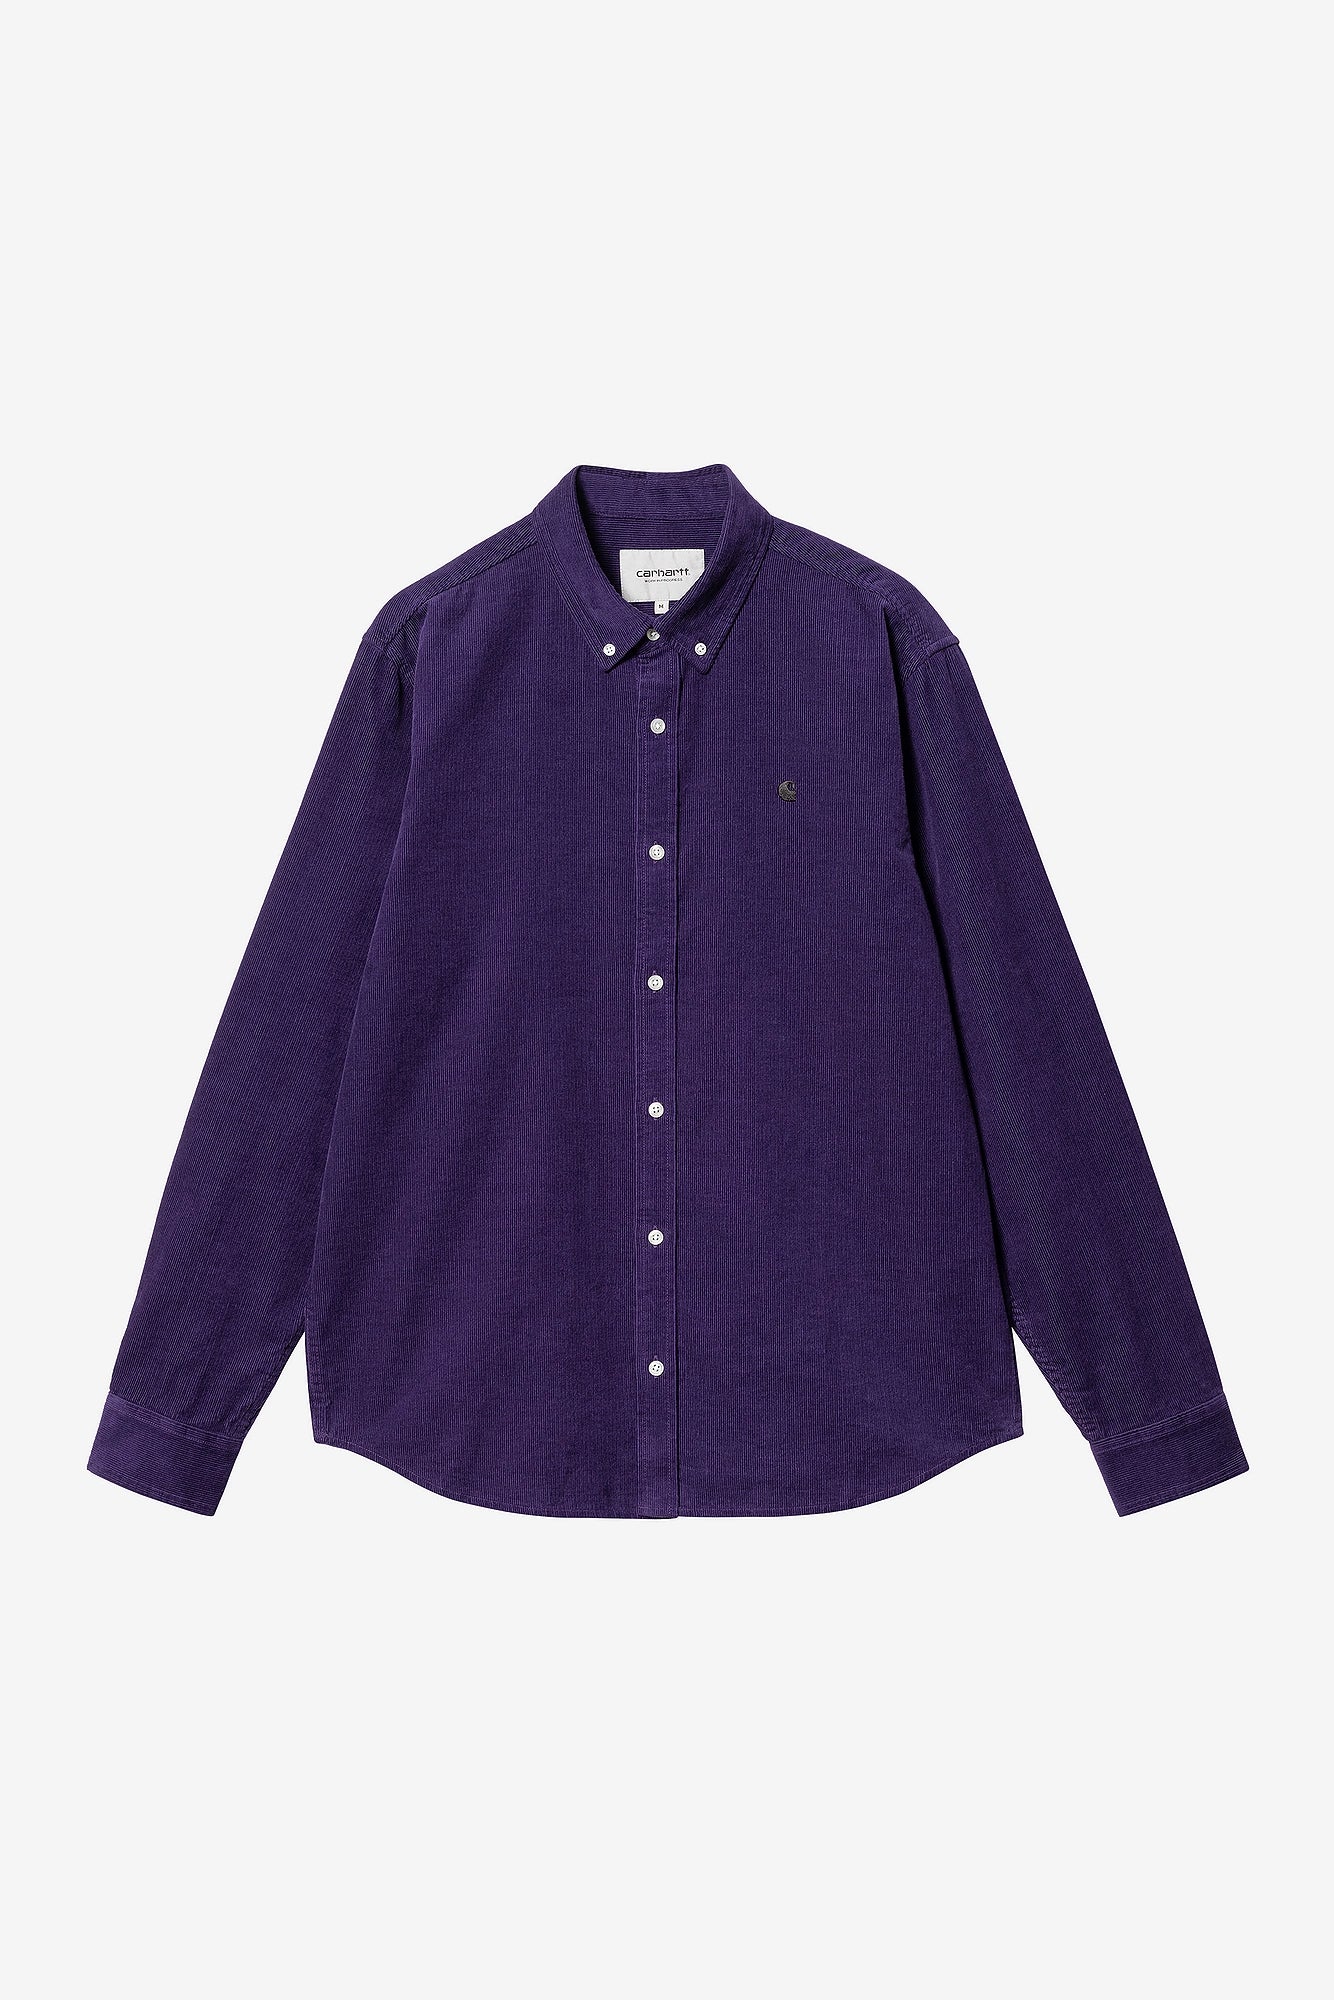 Carhartt WIP   L/S Madison Fine Cord Shirt